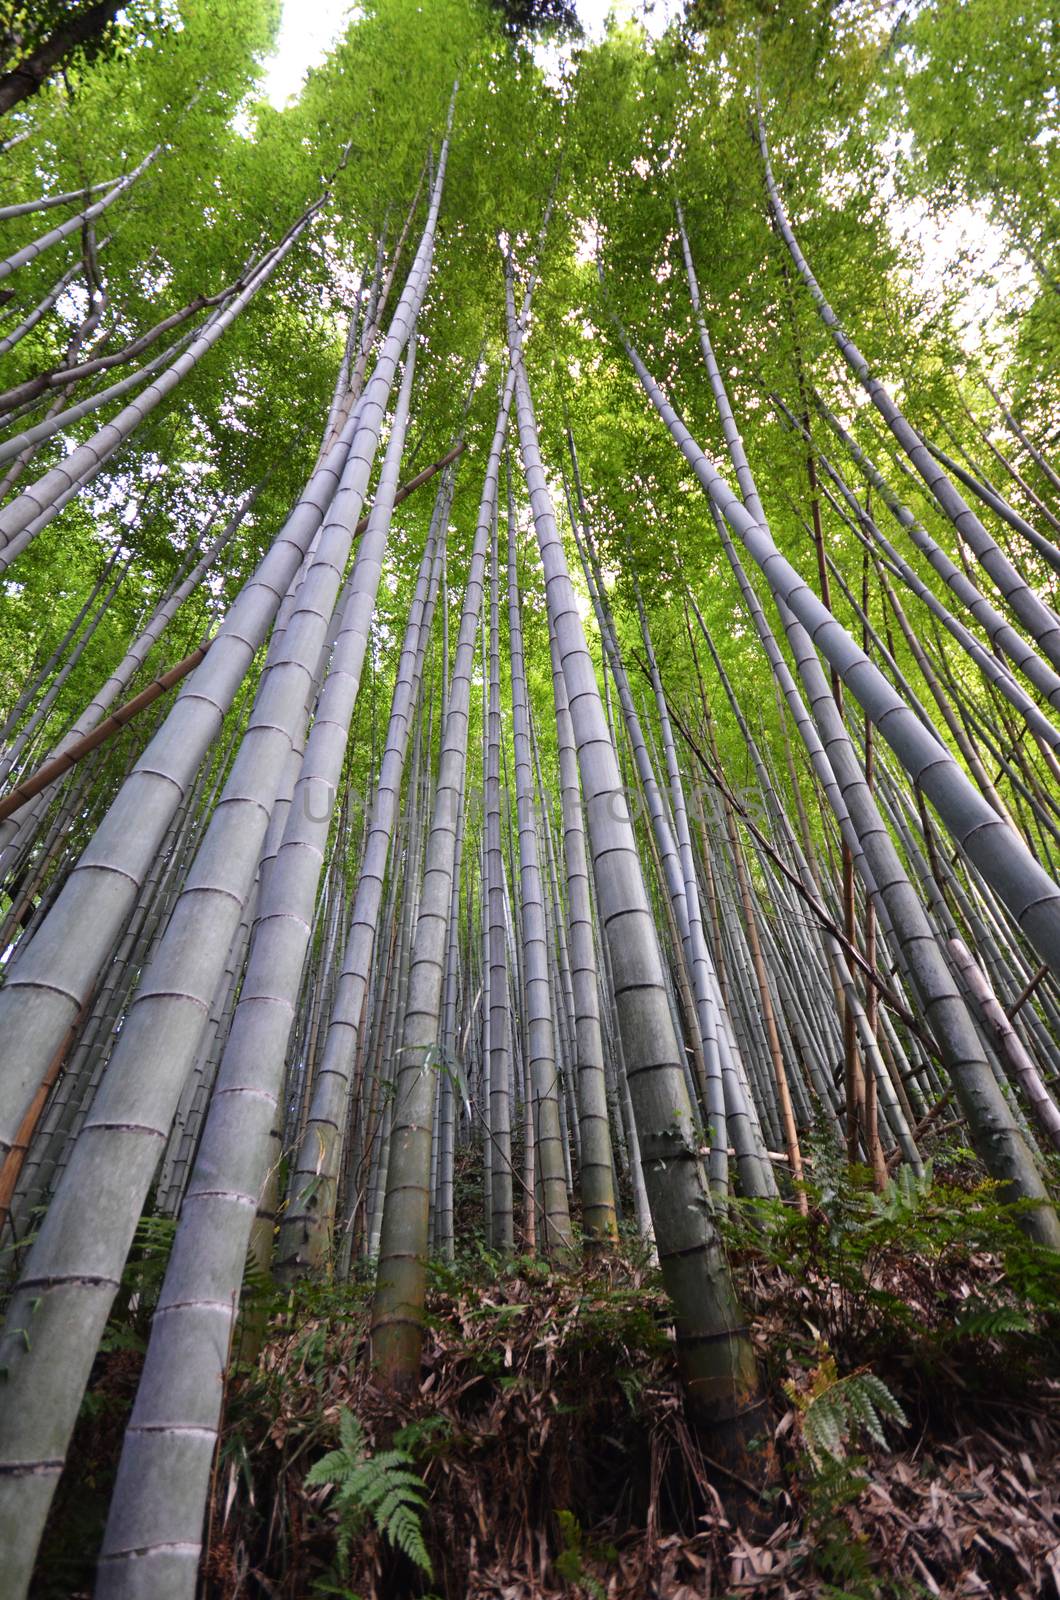 Bamboo grove, bamboo forest at Arashiyama by tang90246